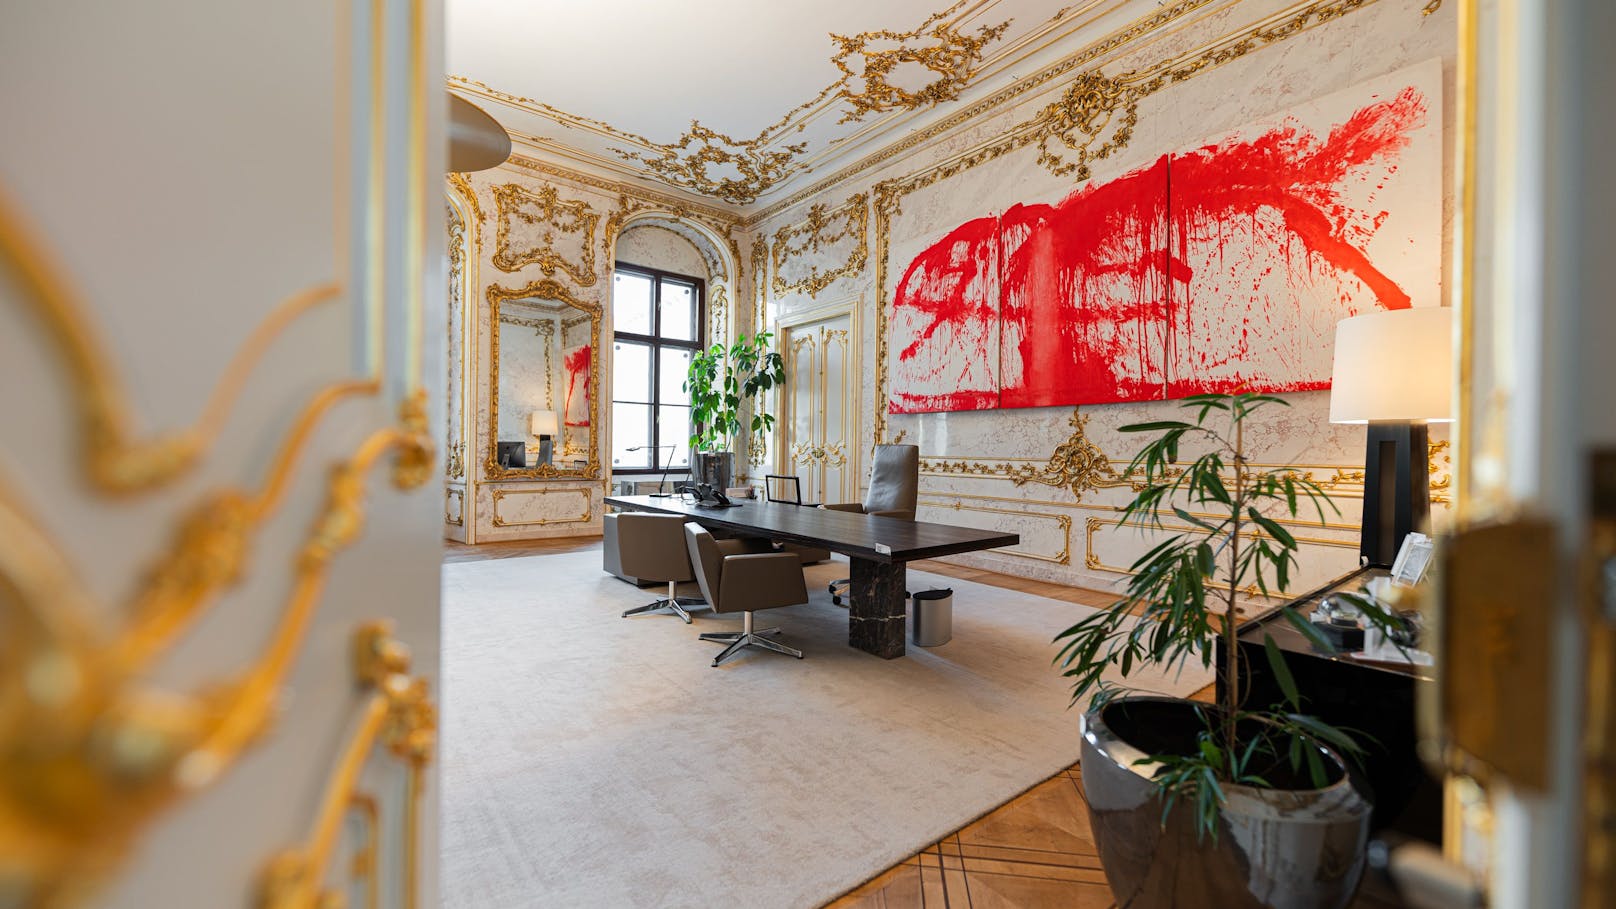 René Benkos persönliches Büro in der Signa-Zentrale im Wiener Palais Harrach wird versteigert. Alles was nicht niet- und nagelfest ist, kommt im Februar 2024 unter den Hammer.